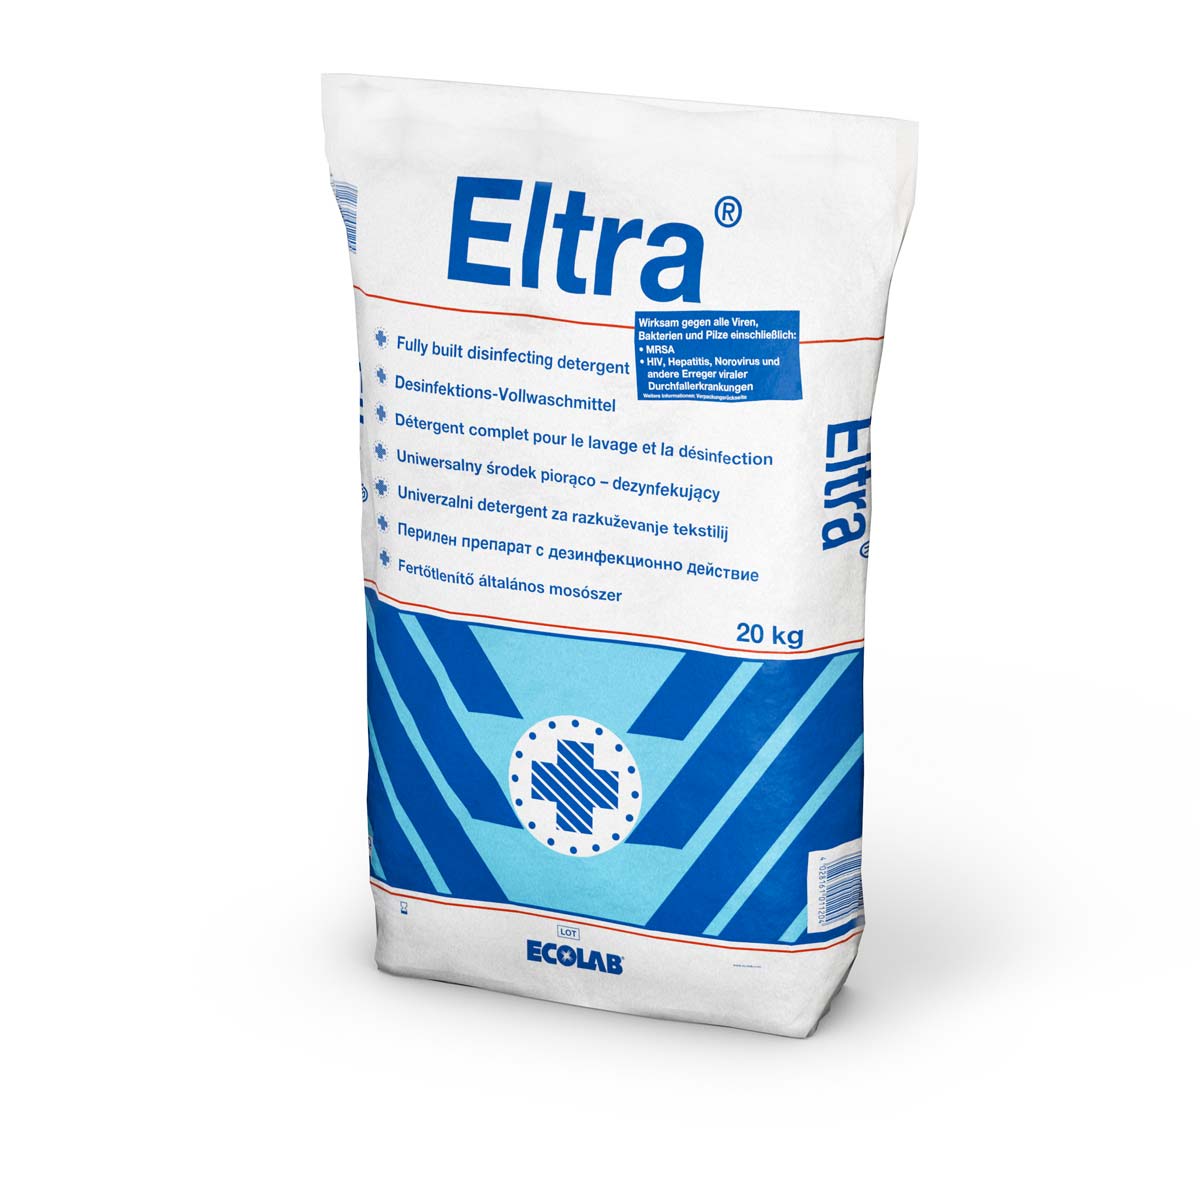 Eltra / 20 KG / Desinfektionswaschmittel / VAH und RKI gelistet